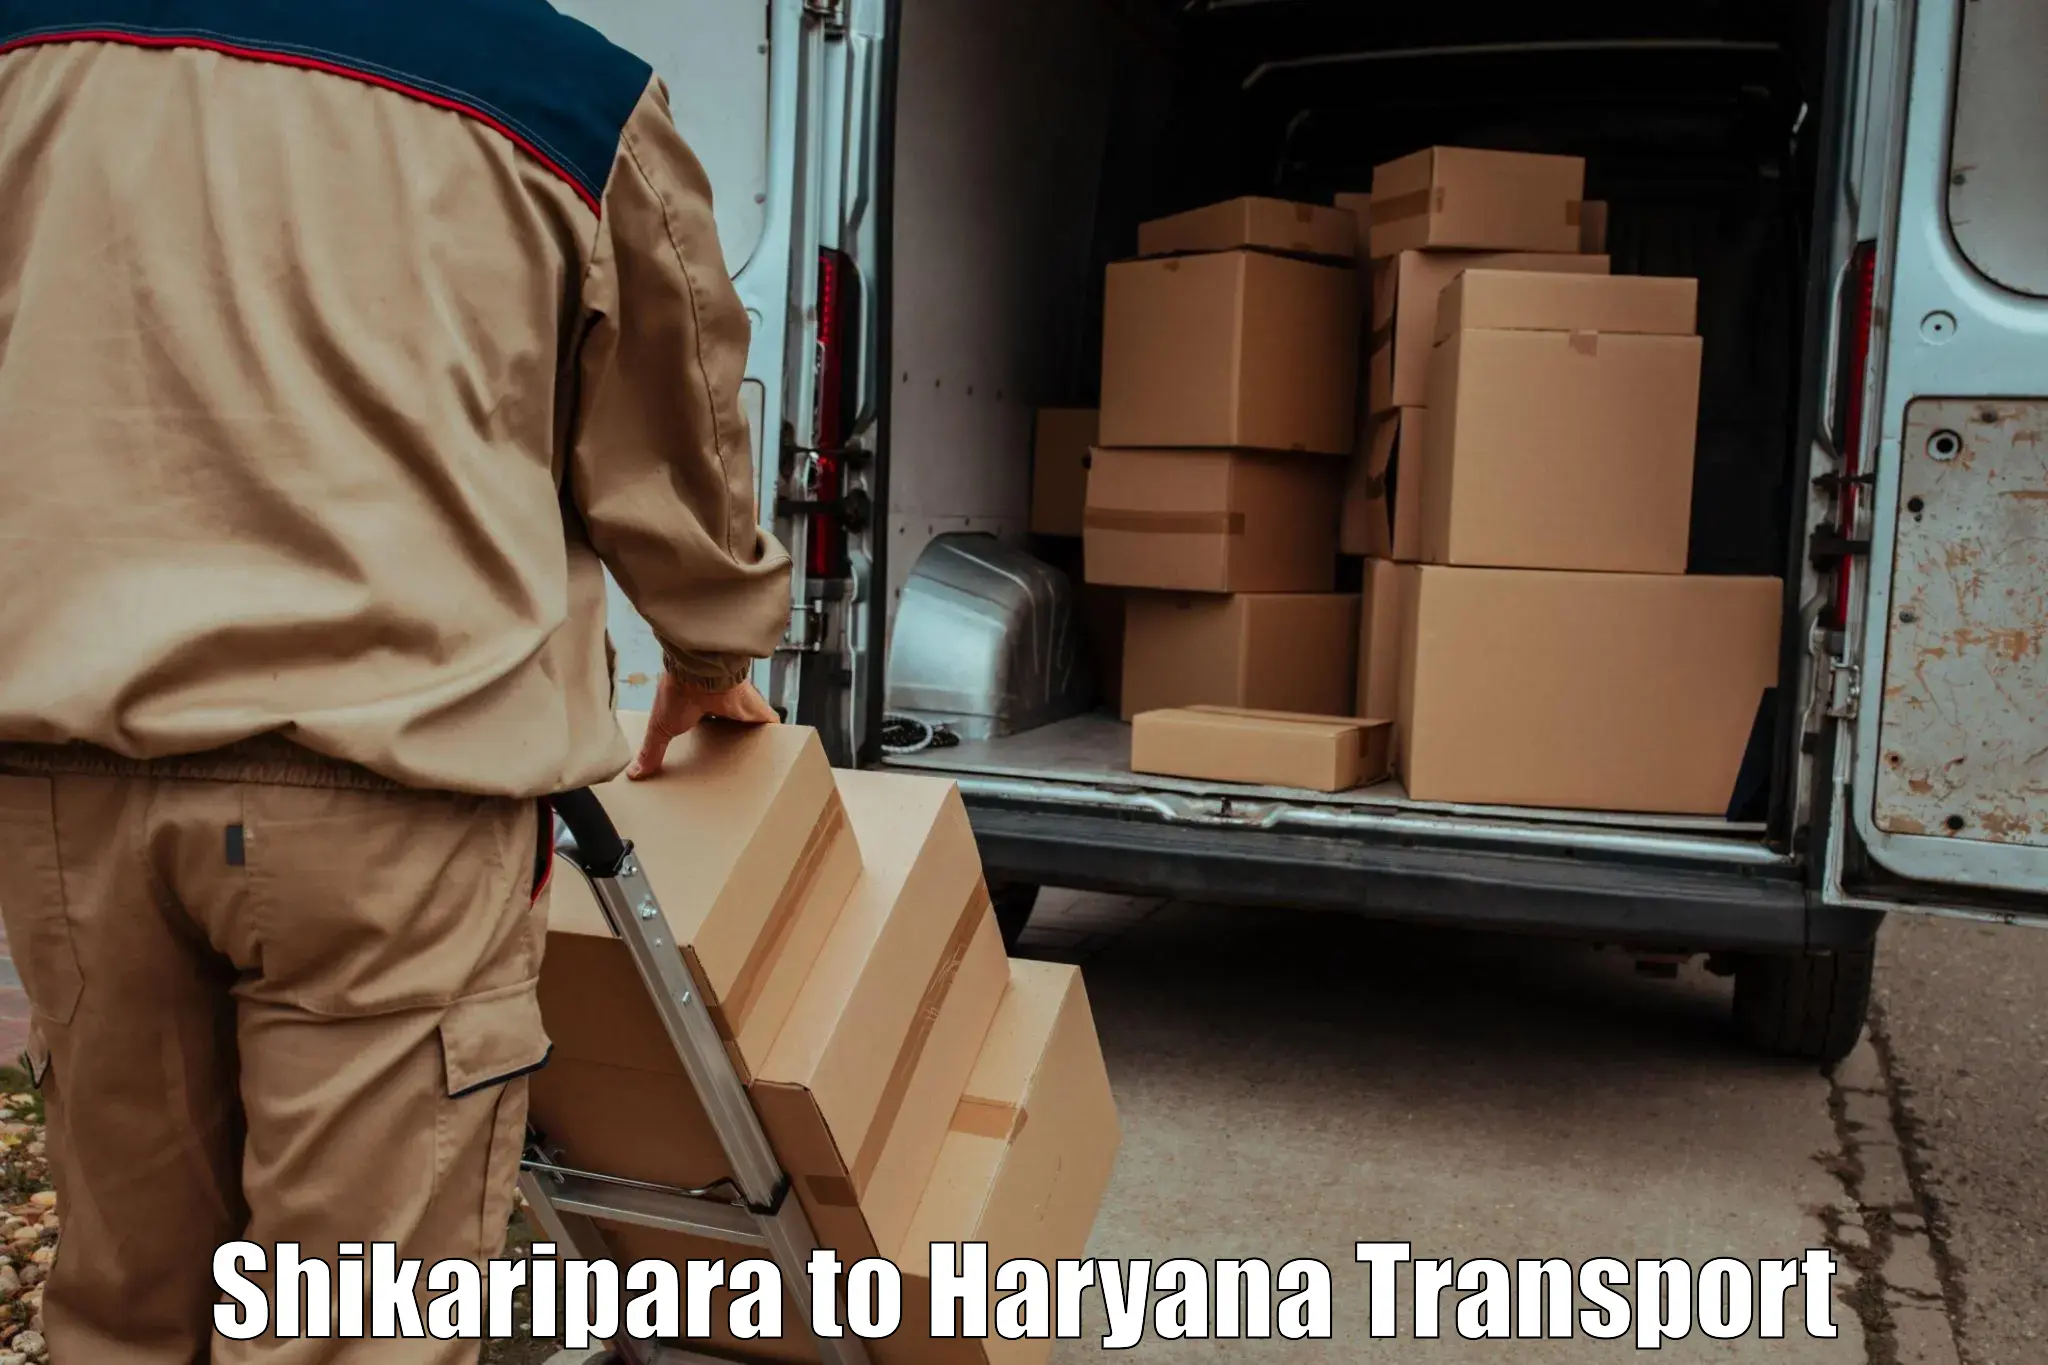 Vehicle parcel service Shikaripara to Haryana